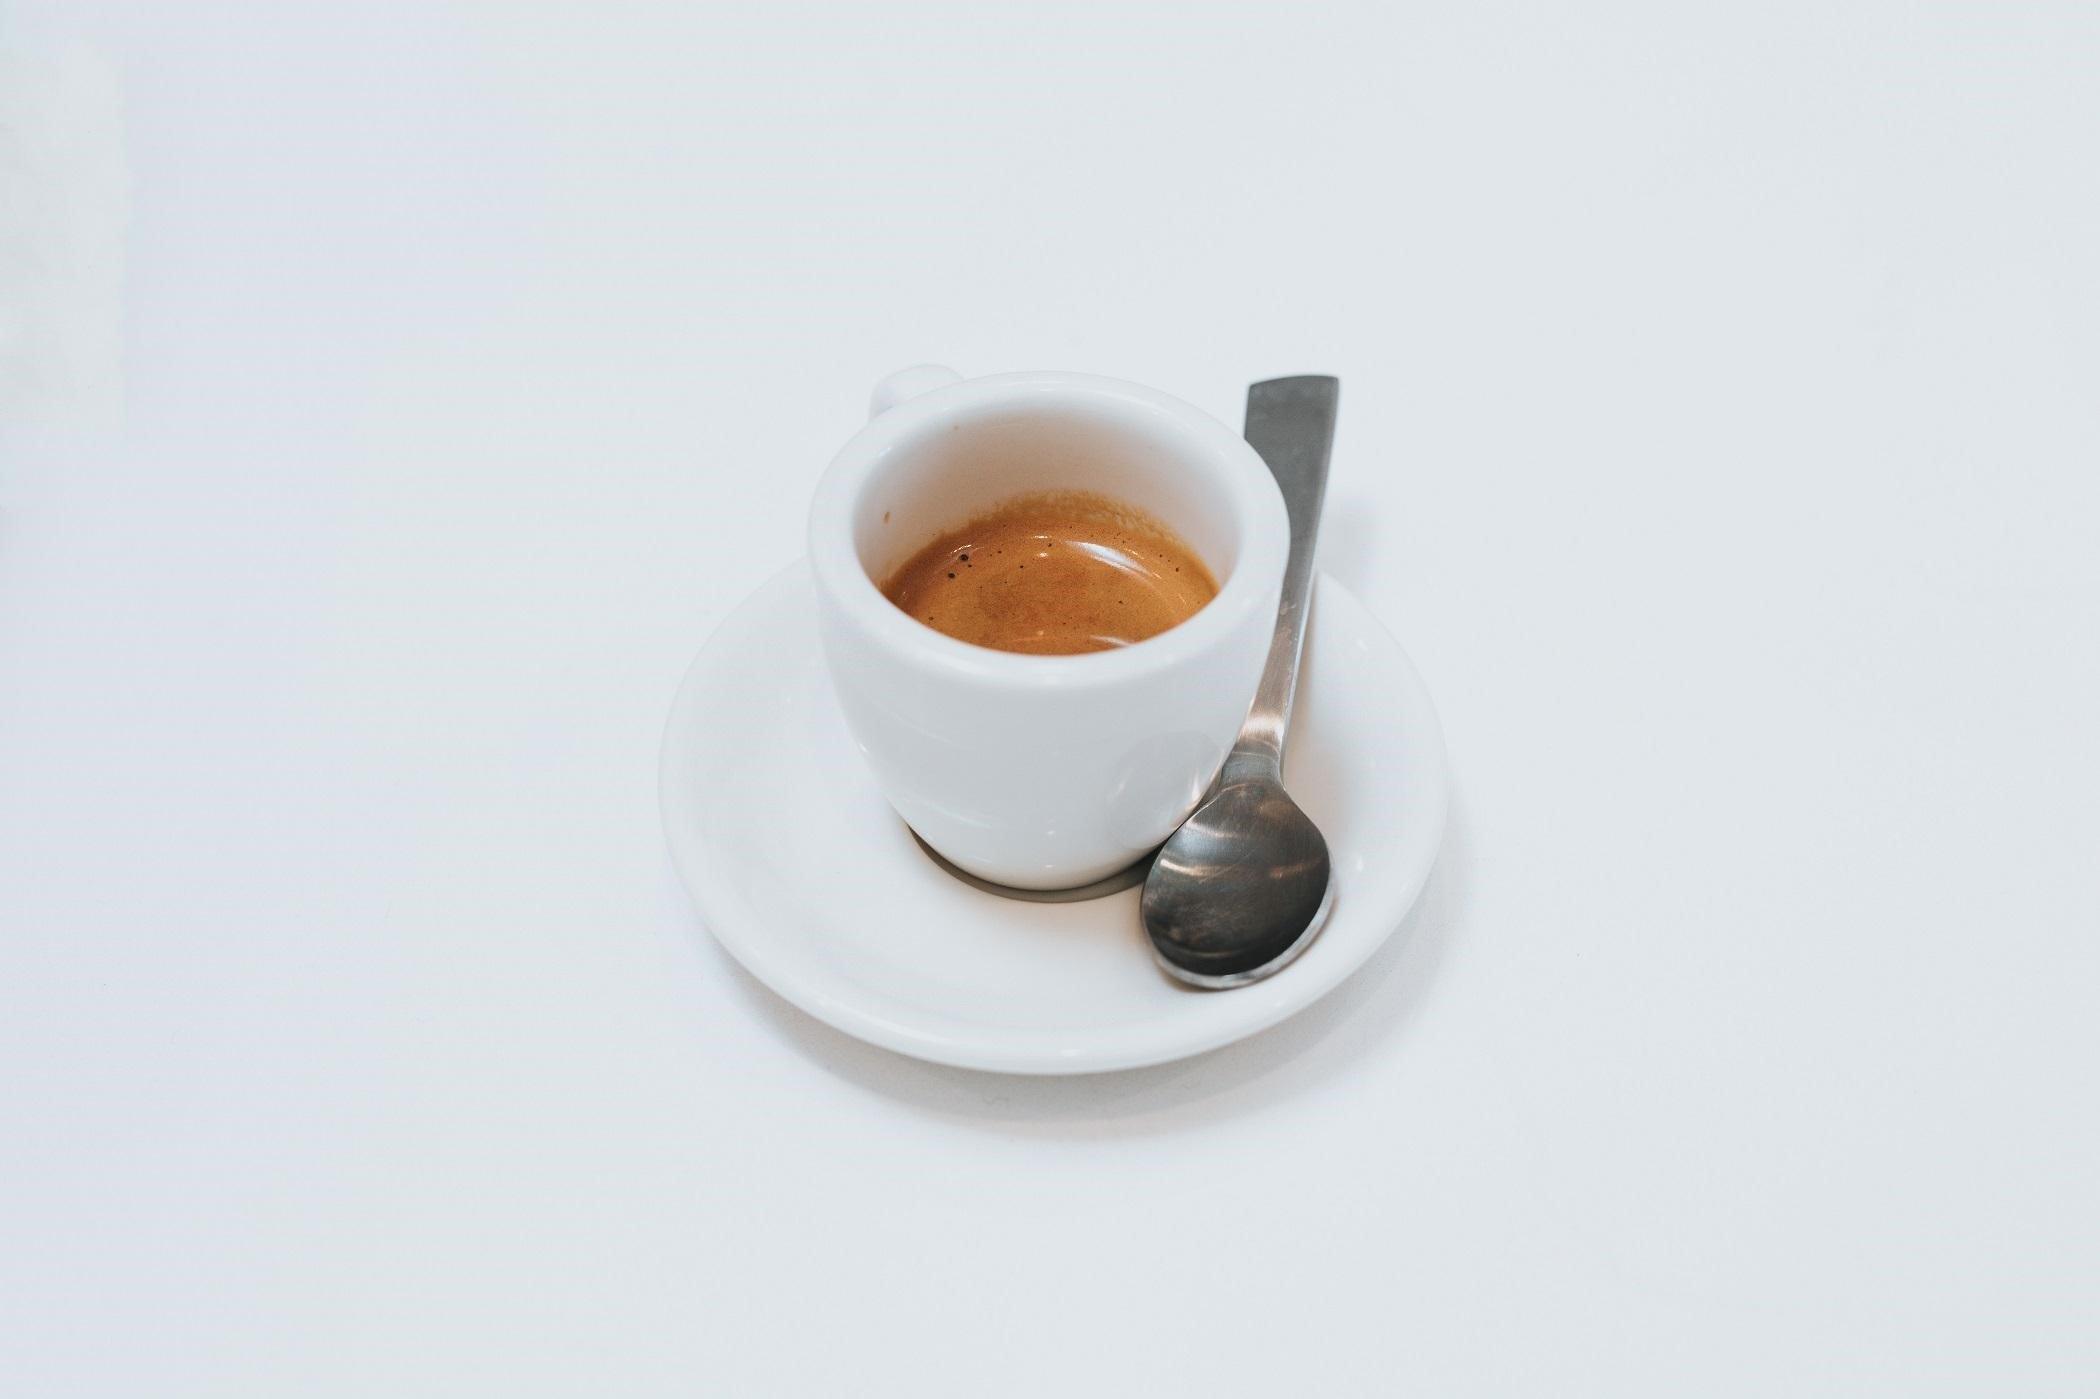 Espresso Scale - Great for measure espresso shots